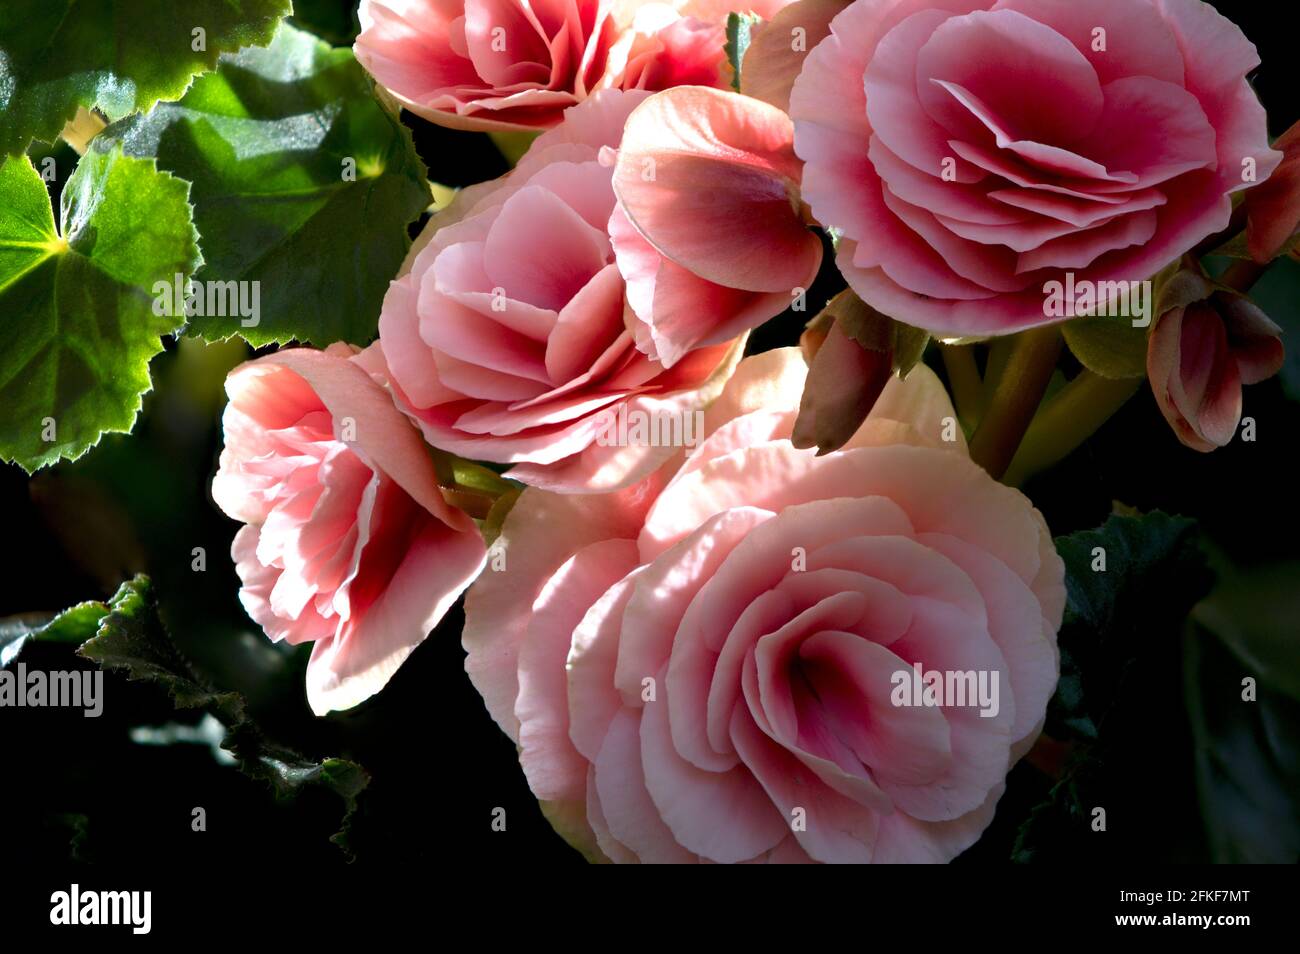 Gros plan de fleurs roses Begonia 'Borias' en utilisant la technique de mise au point-empilement Banque D'Images